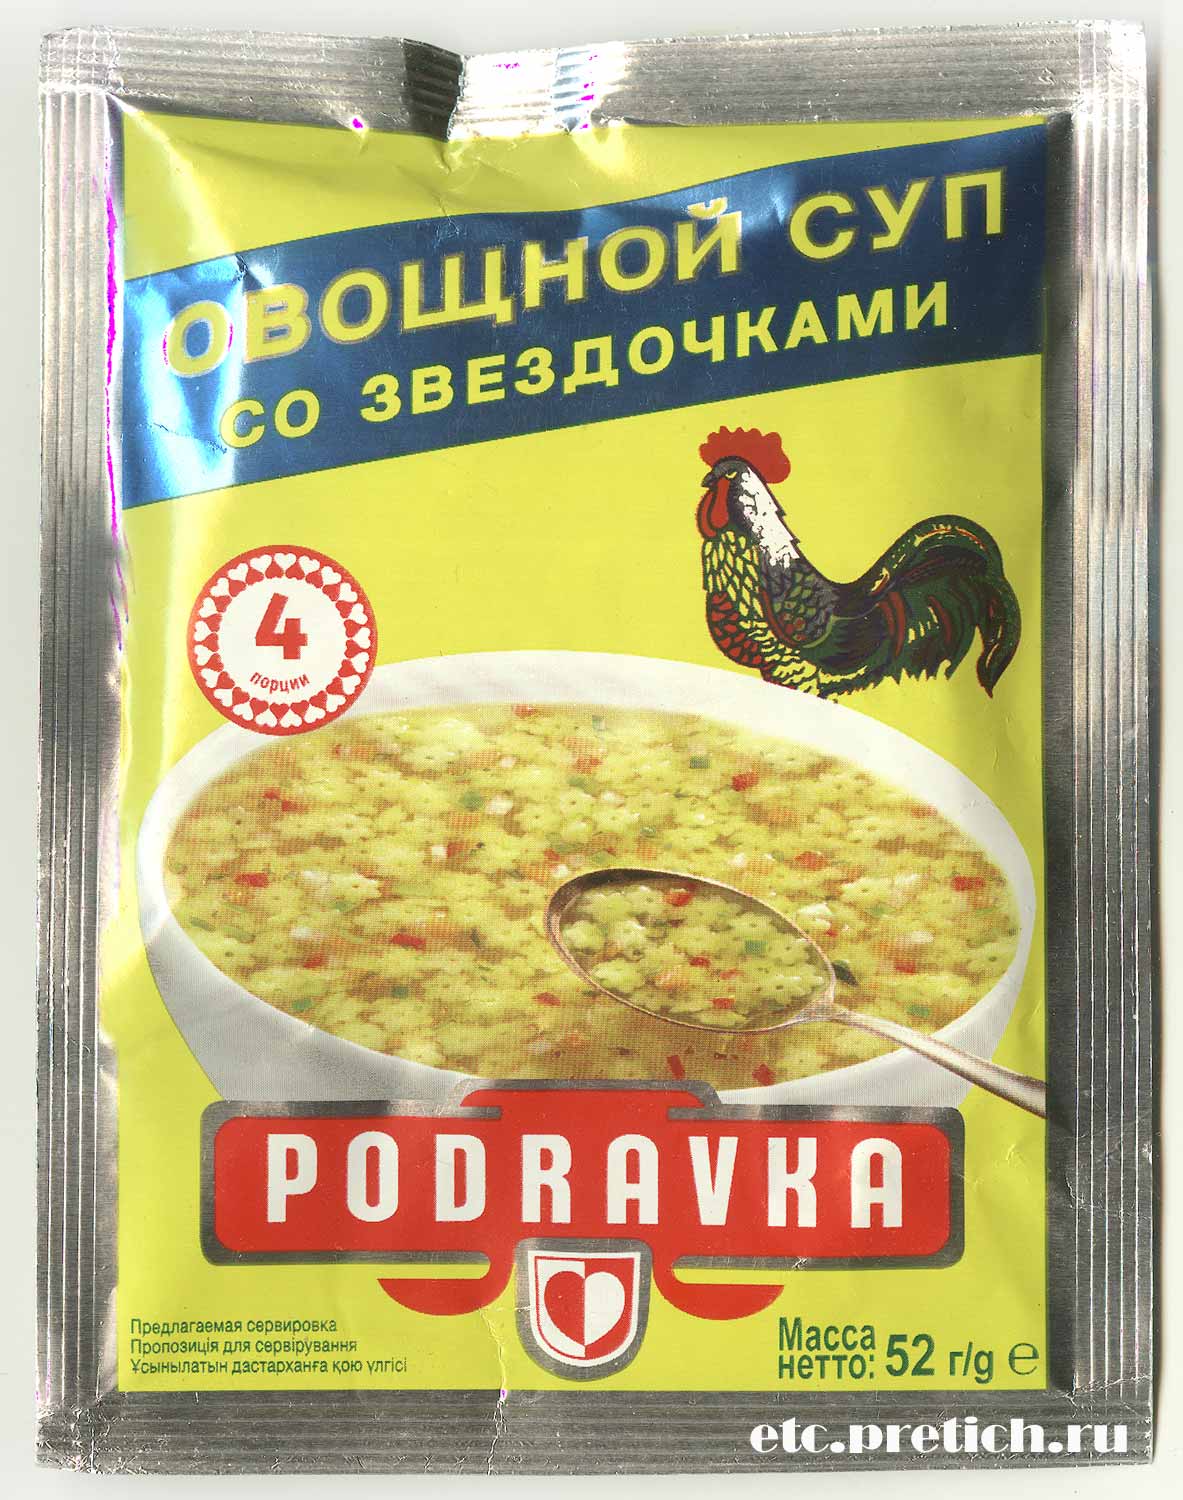 Овощной суп со звездочками Podravka жидкий безвкусный суп из Хорватии